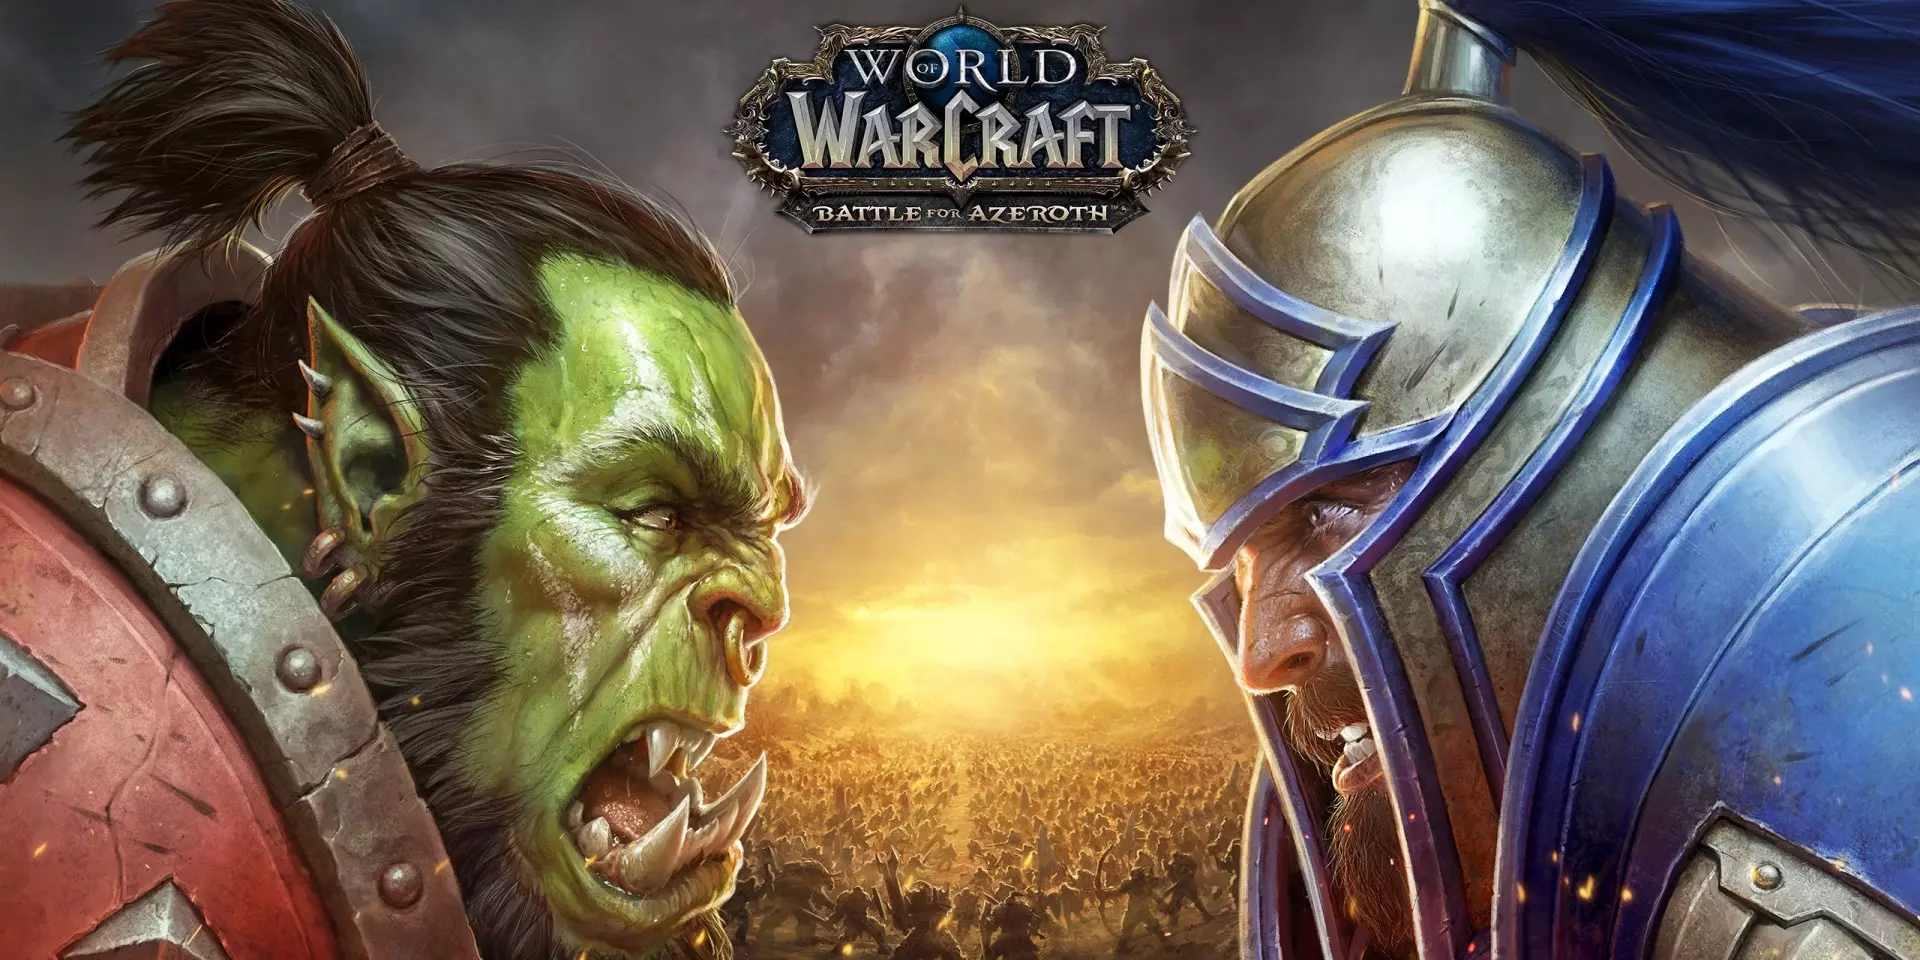 Вселенная Warcraft — вселенная, изначально придуманная для компьютерных игр из серии Warcraft (с англ.